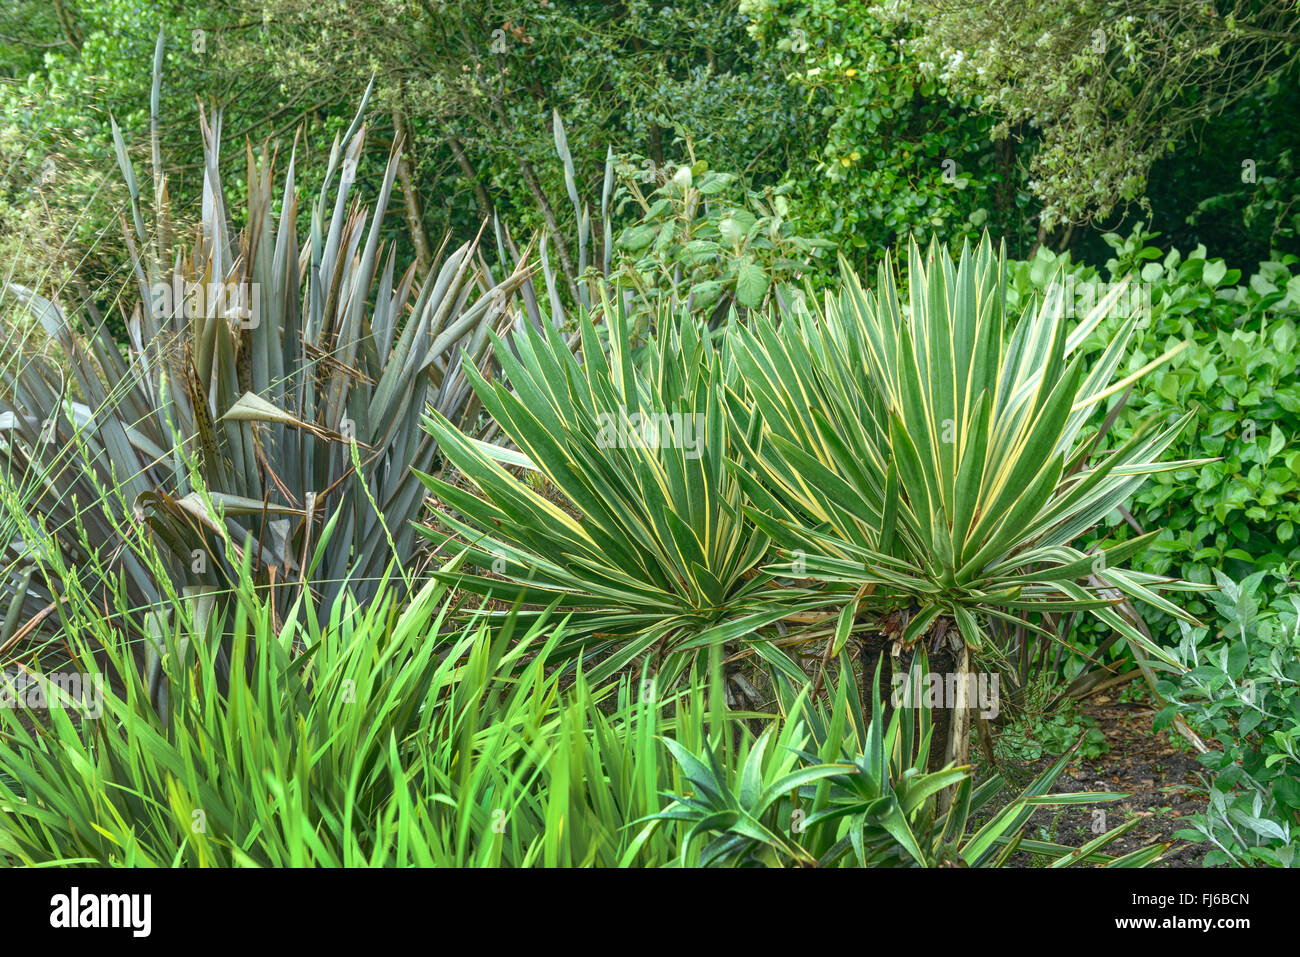 Palm lily (Yucca gloriosa 'Variegata', Yucca gloriosa variegata), cultivar variegata, Regno Unito Inghilterra Foto Stock